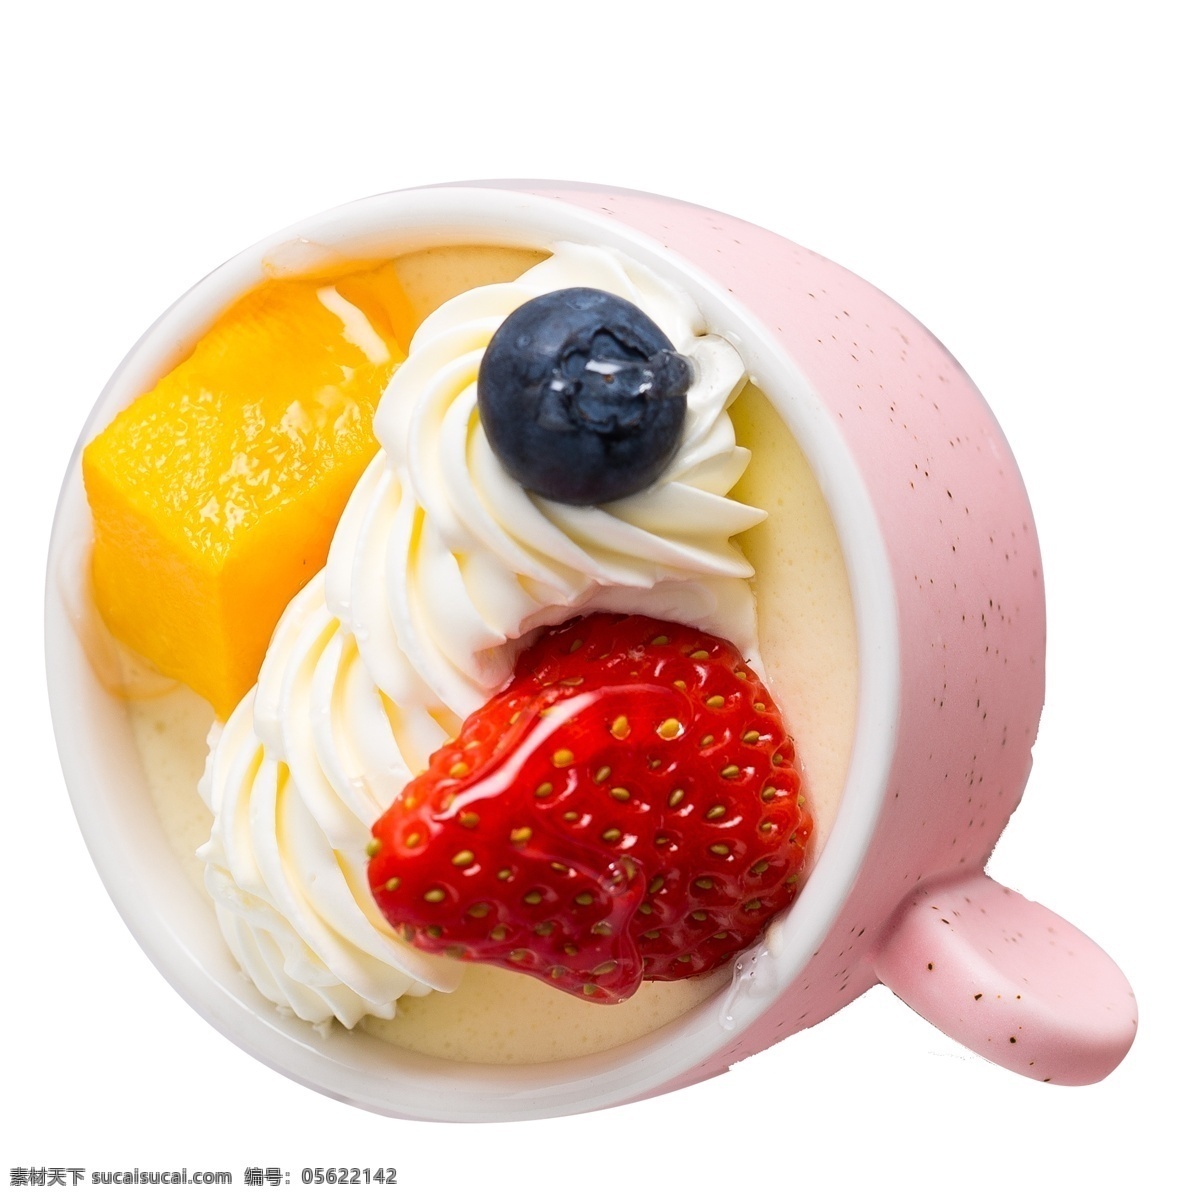 新鲜 水果 蛋糕 免 抠 图 草莓 芒果 新鲜的水果 白色的奶油 杯子 蓝莓 免抠图